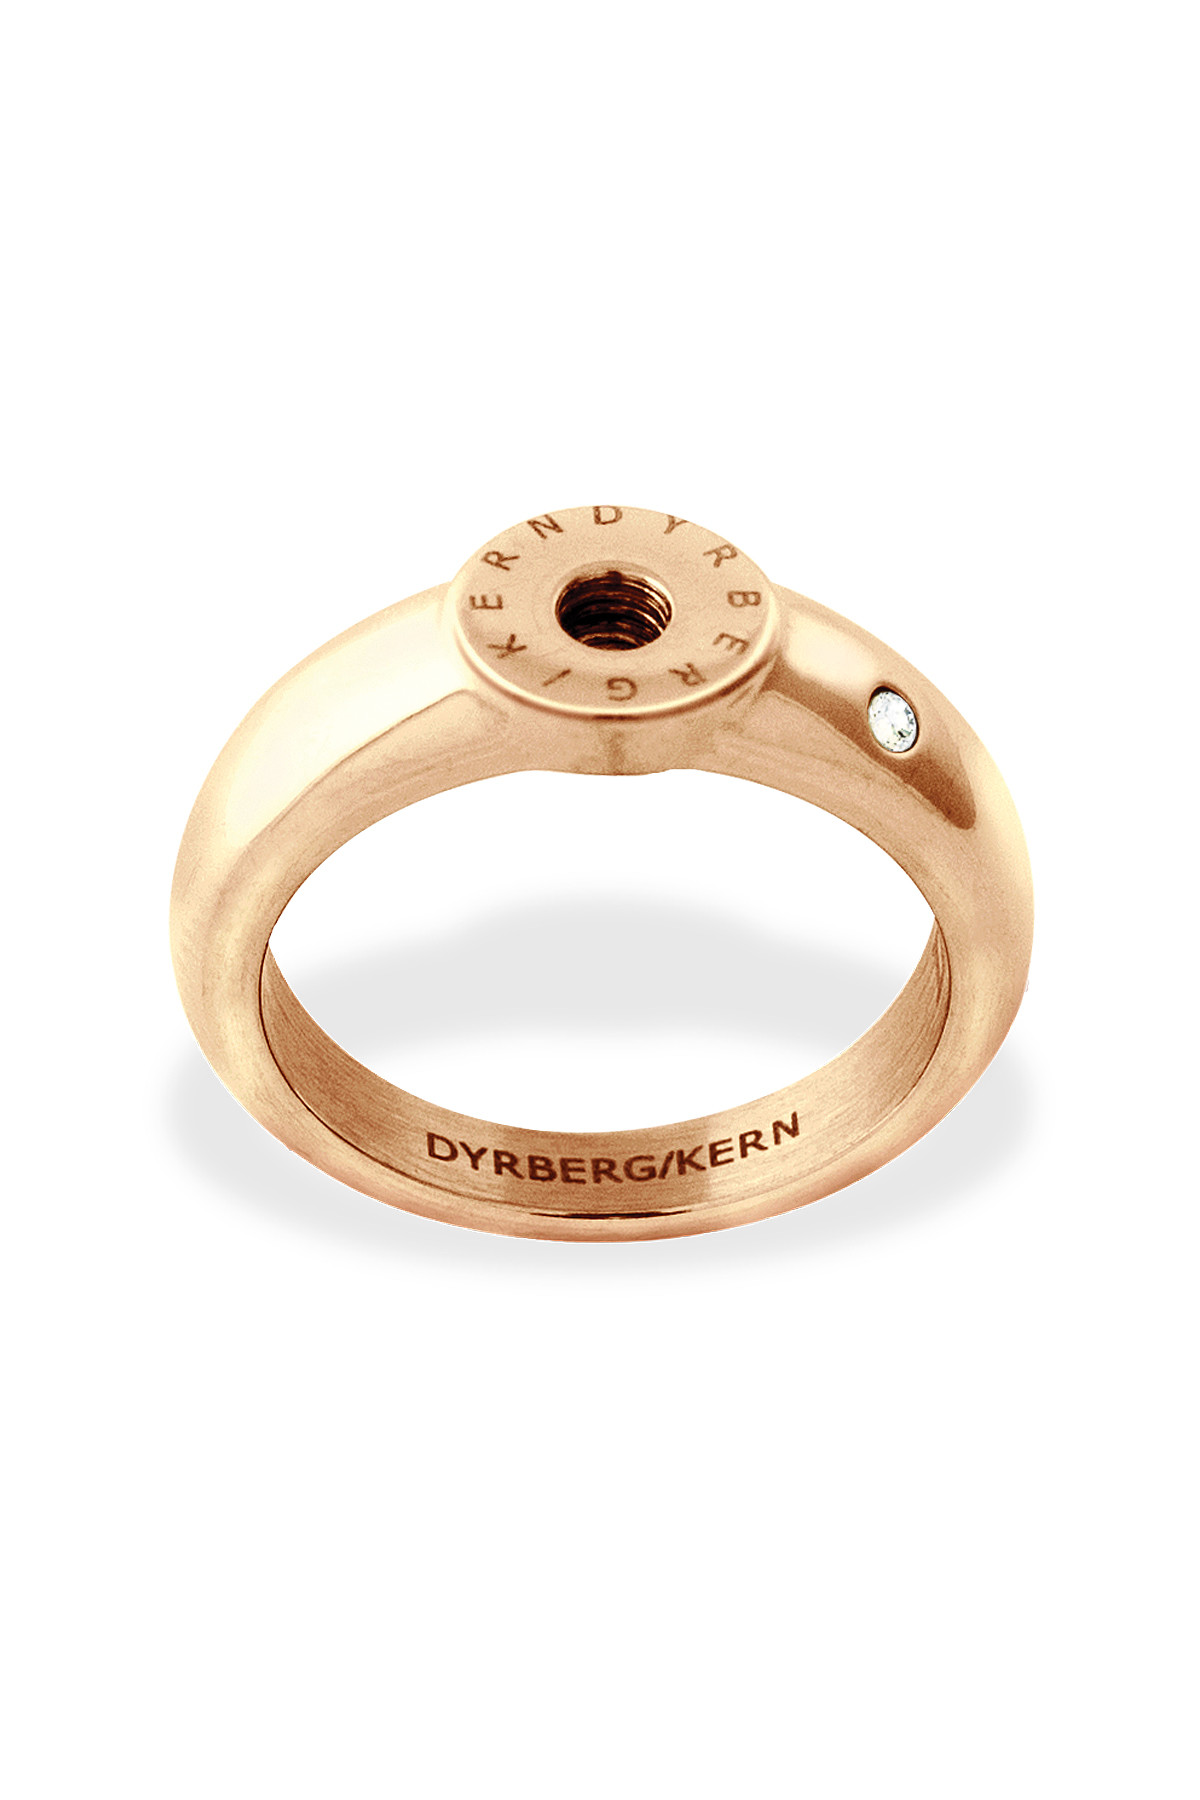 Billede af Dyrberg/kern Ring Ring, Farve: Rose Guld, Størrelse: 0/48, Dame